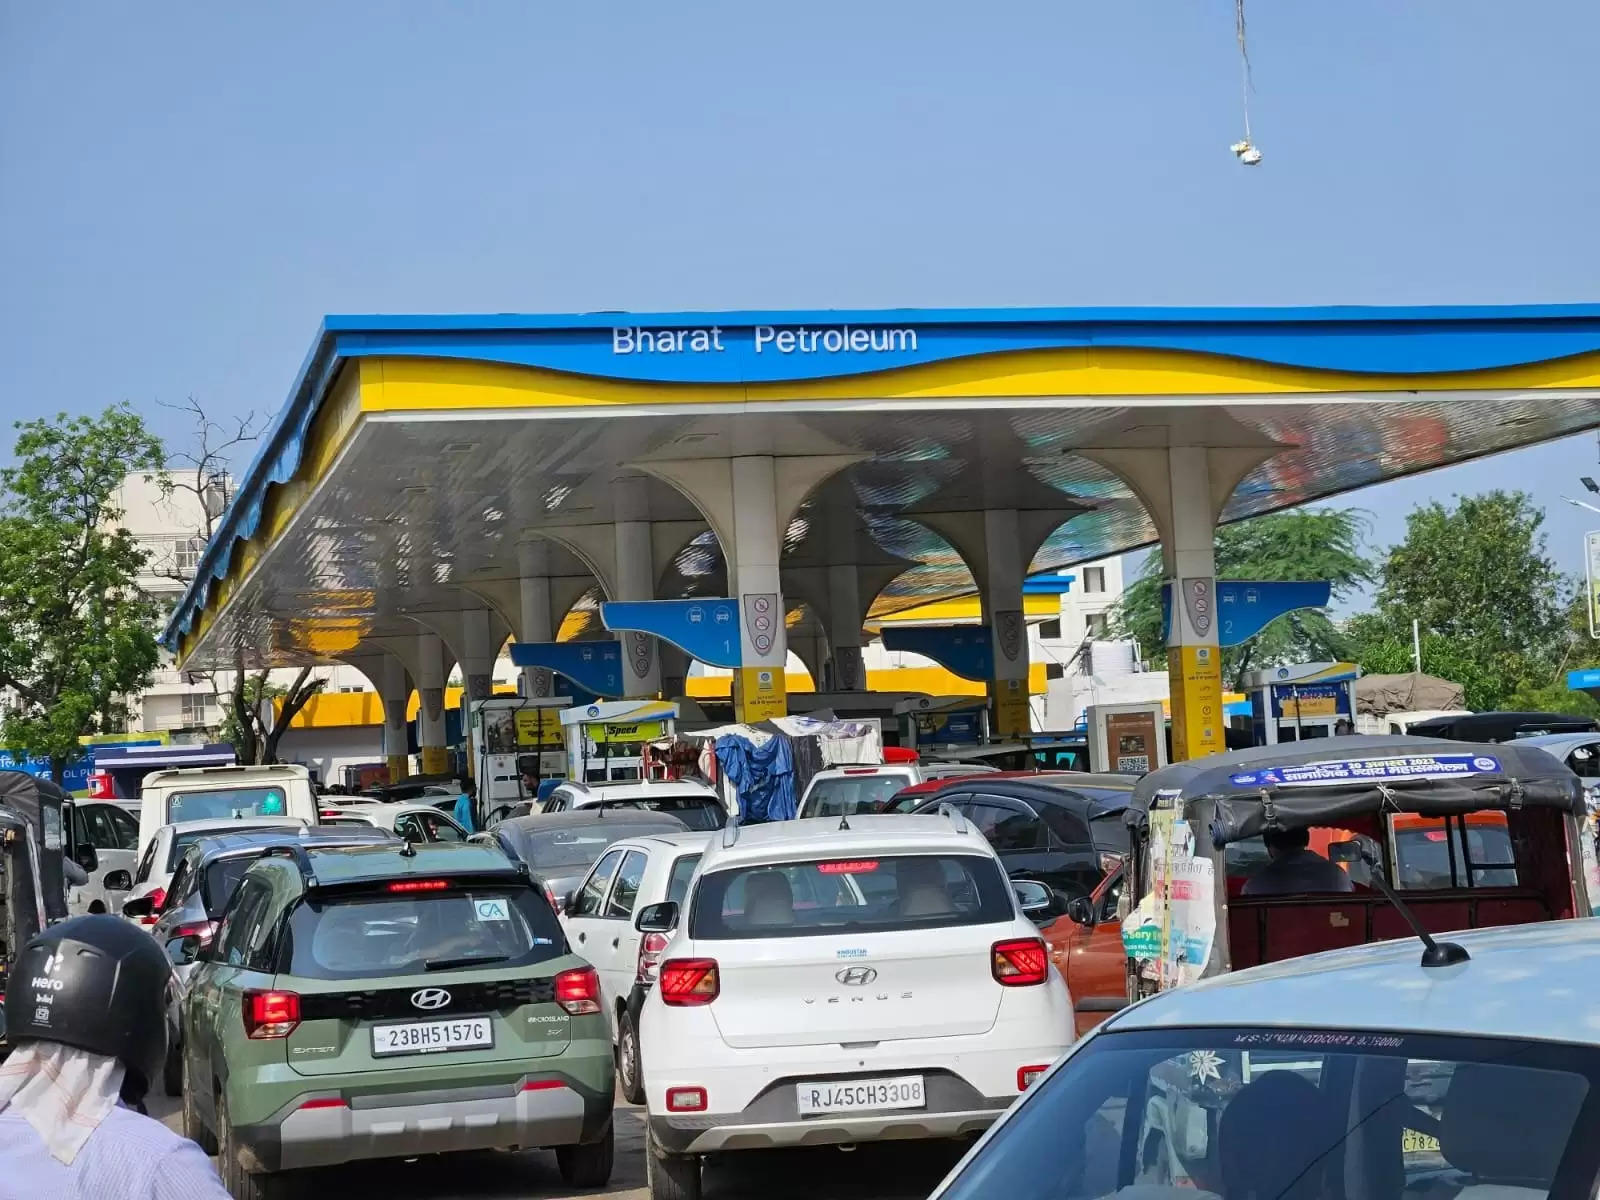 राजस्थान में पेट्रोल पंपों की अनिश्चितकालीन हड़ताल, केवल 60 पंपों पर मिल रहा पेट्रोल-डीजल